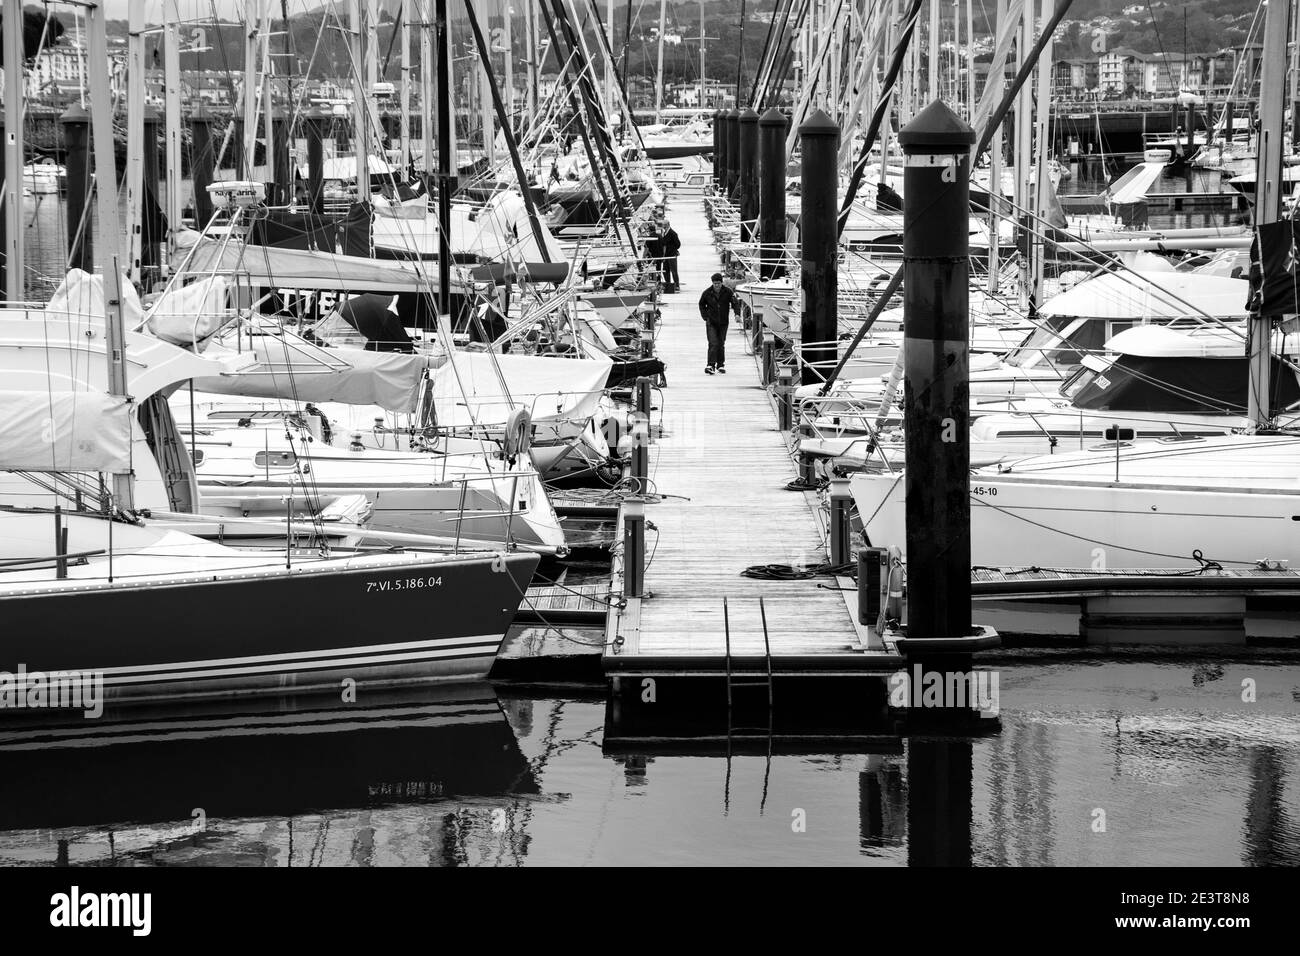 HONDARRIBIA, ESPAGNE - 25 AVRIL 2018 : yachts amarrés à la marina de la ville côtière de Hondarribia, dans le nord de l'Espagne (pays basque espagnol). Noir et blanc Banque D'Images